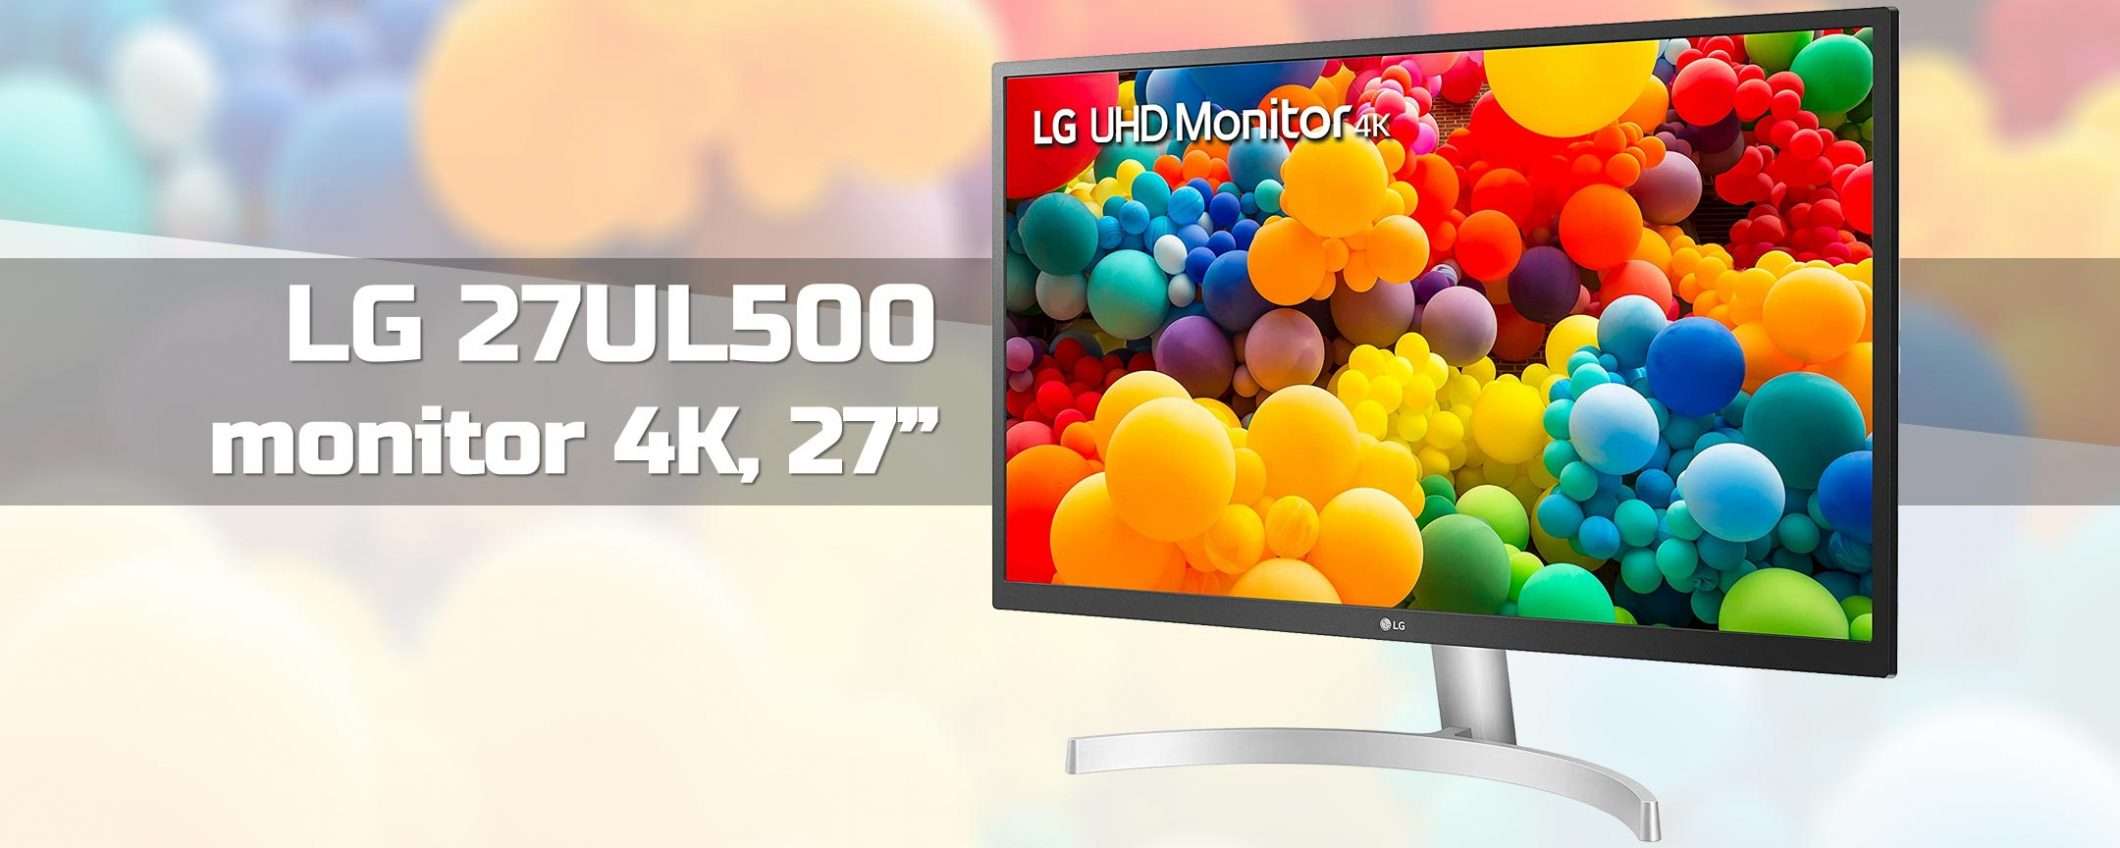 Monitor in offerta: LG 27UL500 (4K, 27'') a -119€